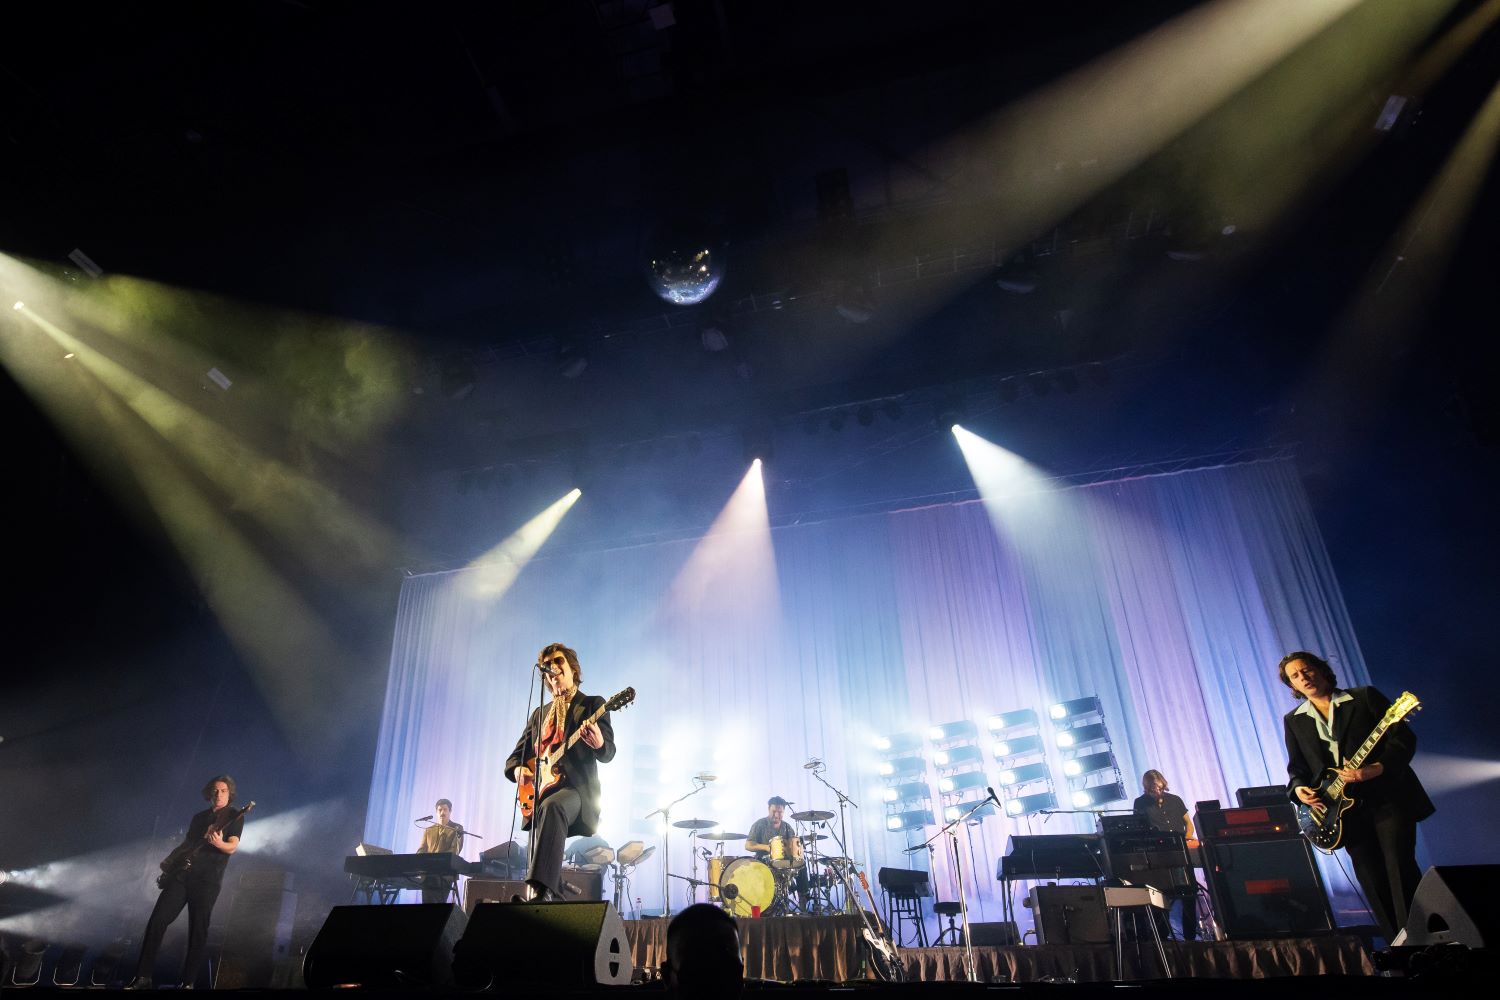 รีวิวคอนเสิร์ต ‘Arctic Monkeys Live in Bangkok’ สุดฟินและสุดมันส์กับโชว์แรกในไทยที่ขน 21 บทเพลงมาบรรเลงอย่างประทับใจ